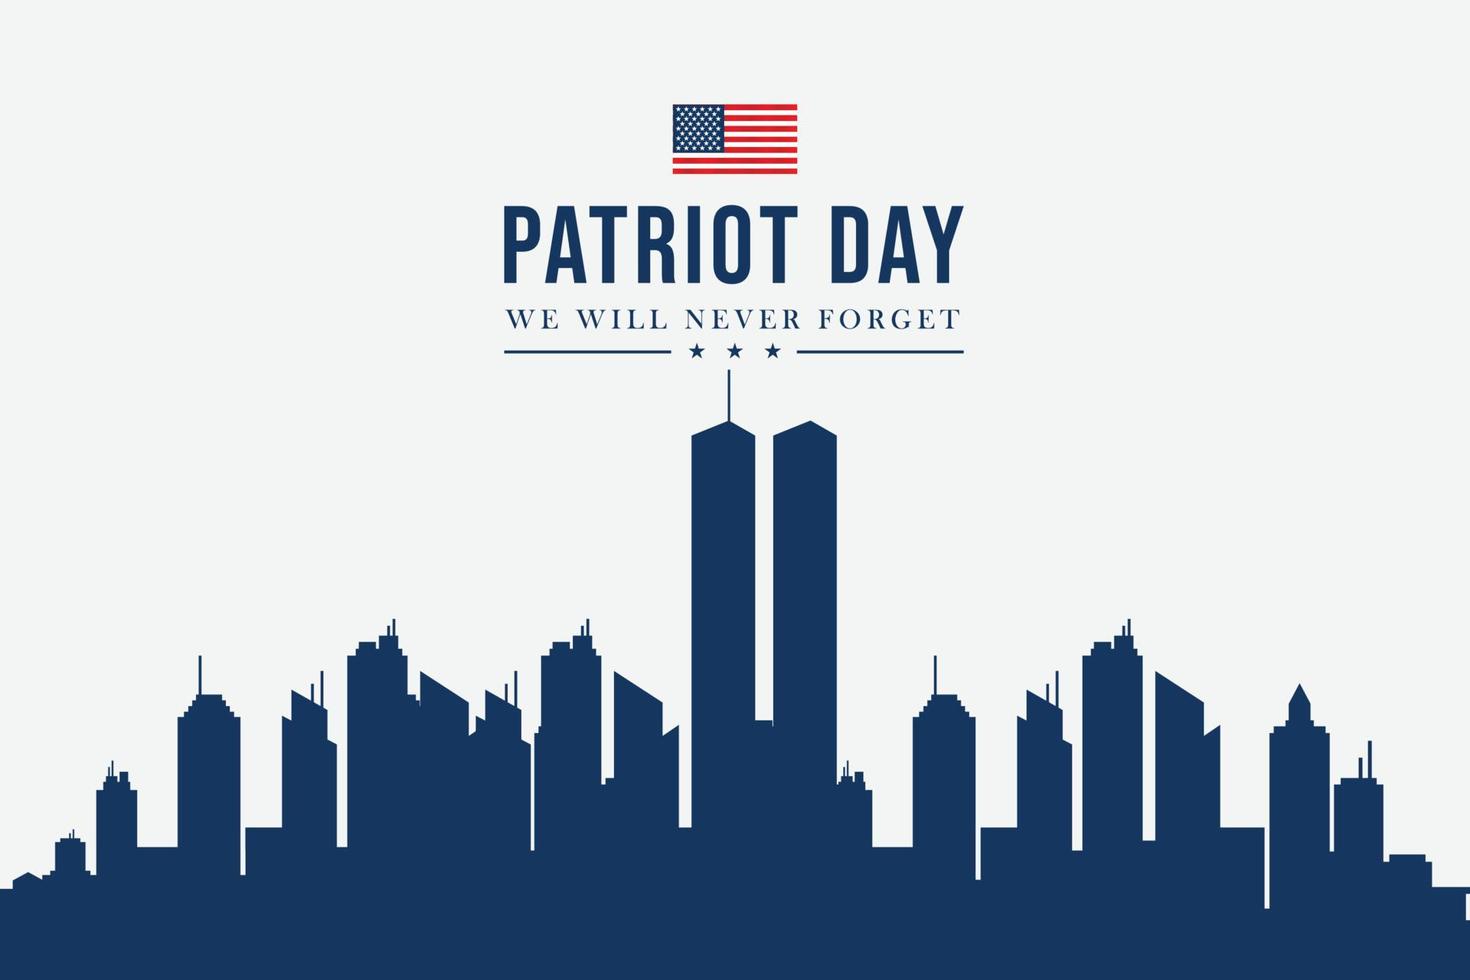 tours jumelles à new york city skyline. affiche vectorielle du 11 septembre 2001. fête des patriotes, 11 septembre, nous n'oublierons jamais, arrière-plan avec la silhouette de la ville de new york. vecteur